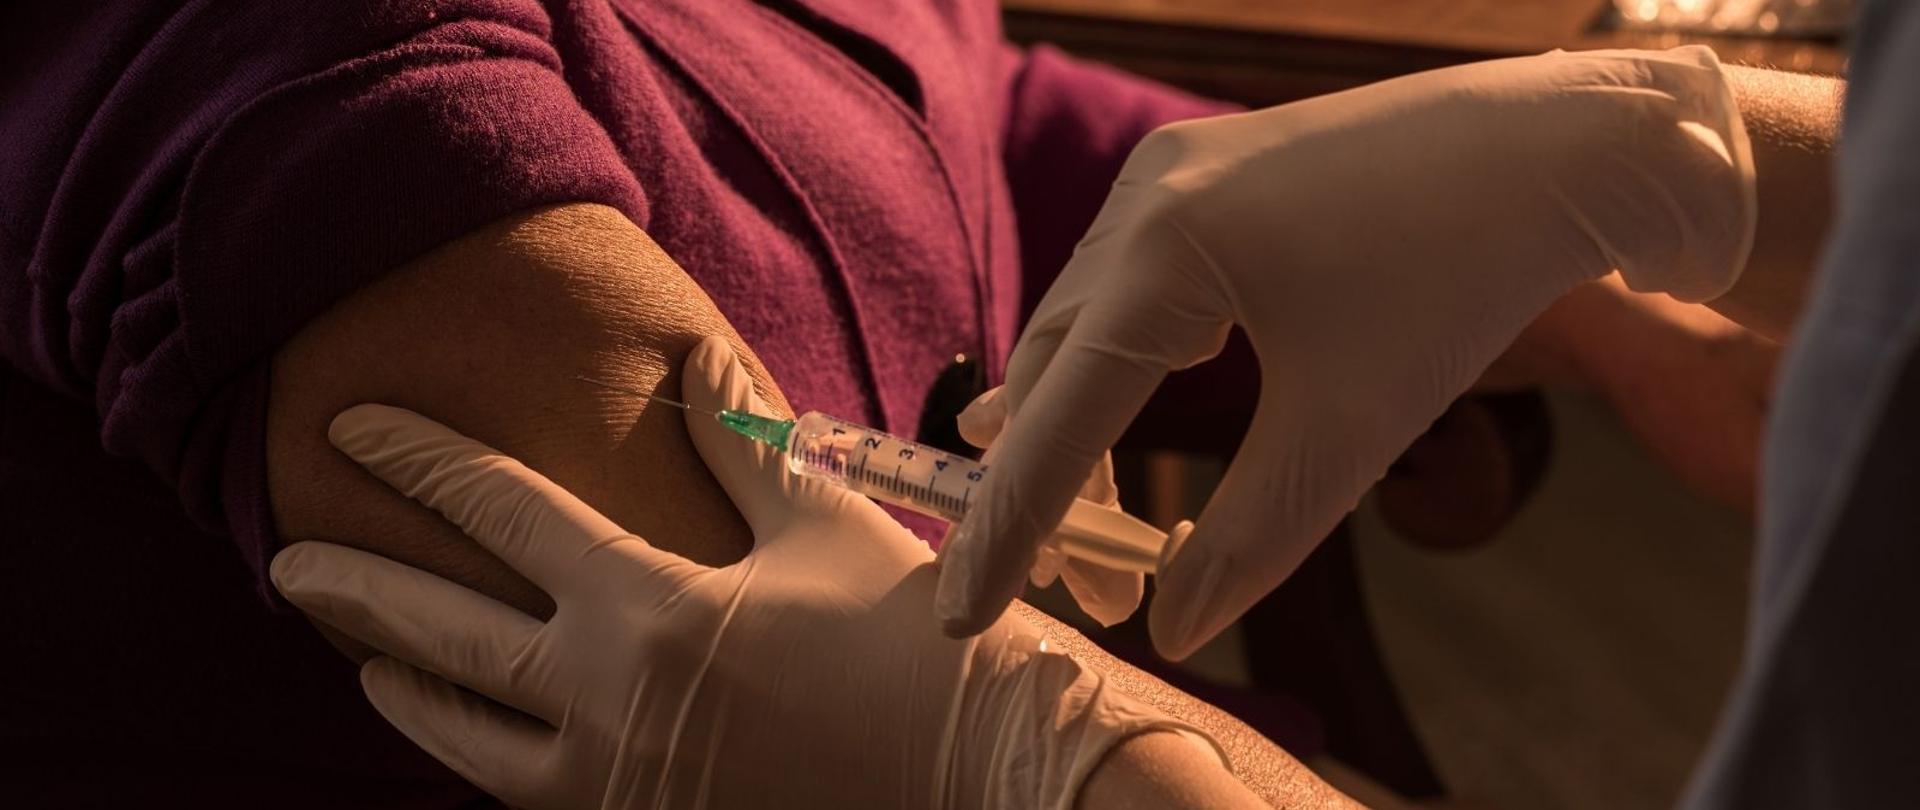 Podanie szczepionki w ramię starszej osoby. Na zdjęciu widoczna bordowa bluzka pacjentki i jej ramię oraz dwie ręce pielęgniarki w białych rękawiczkach, która strzykawką wstrzykuje szczepionkę